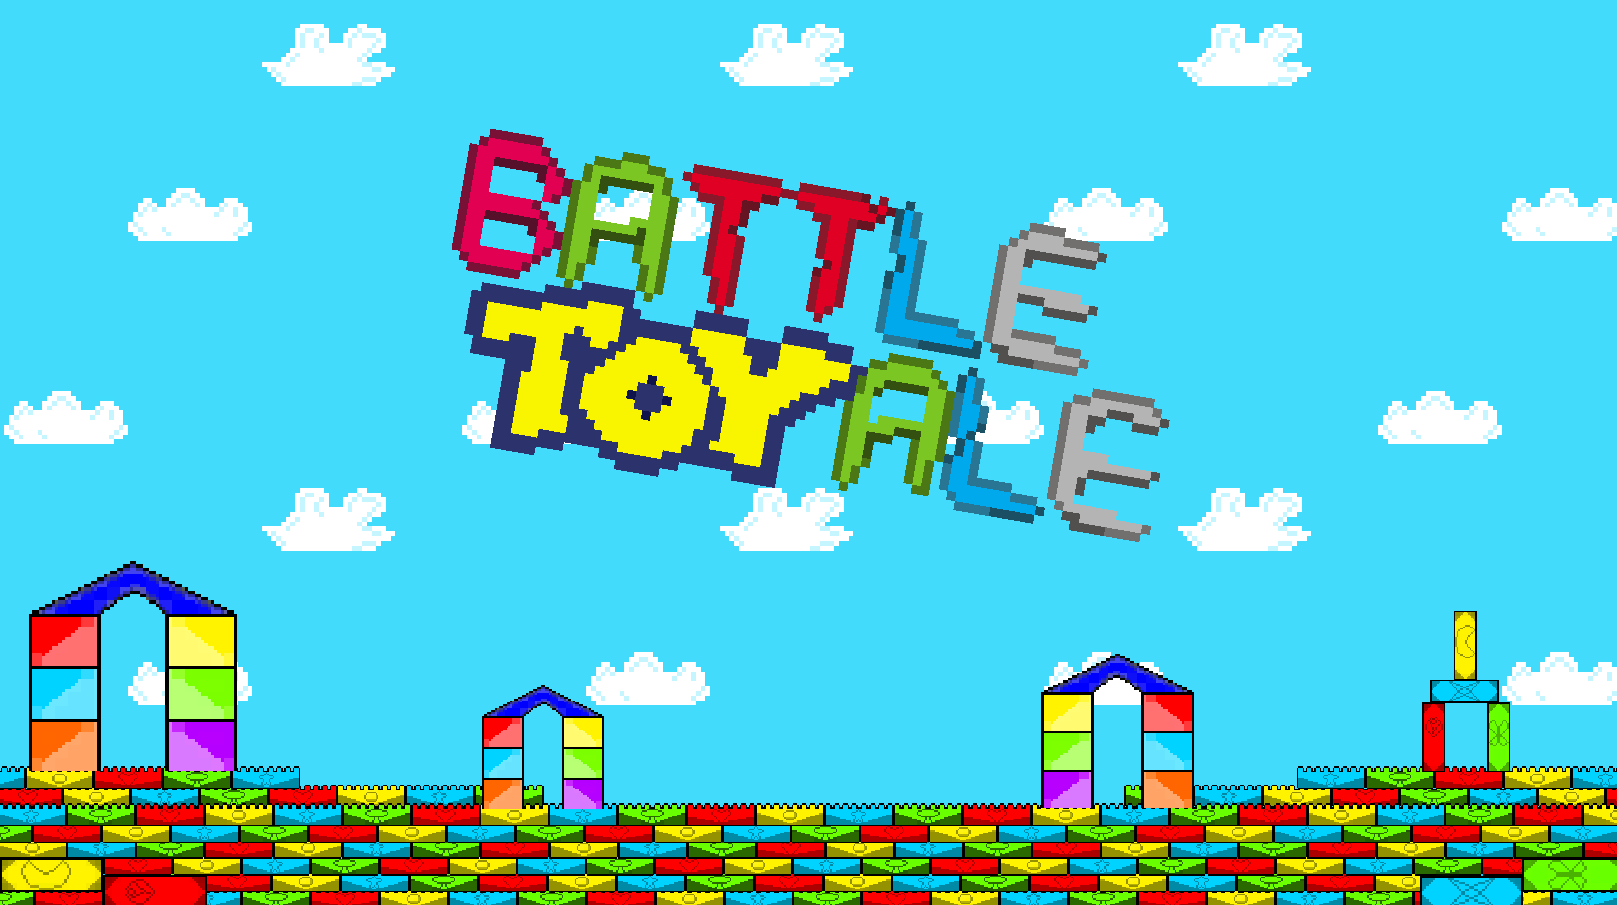 BattleToyale